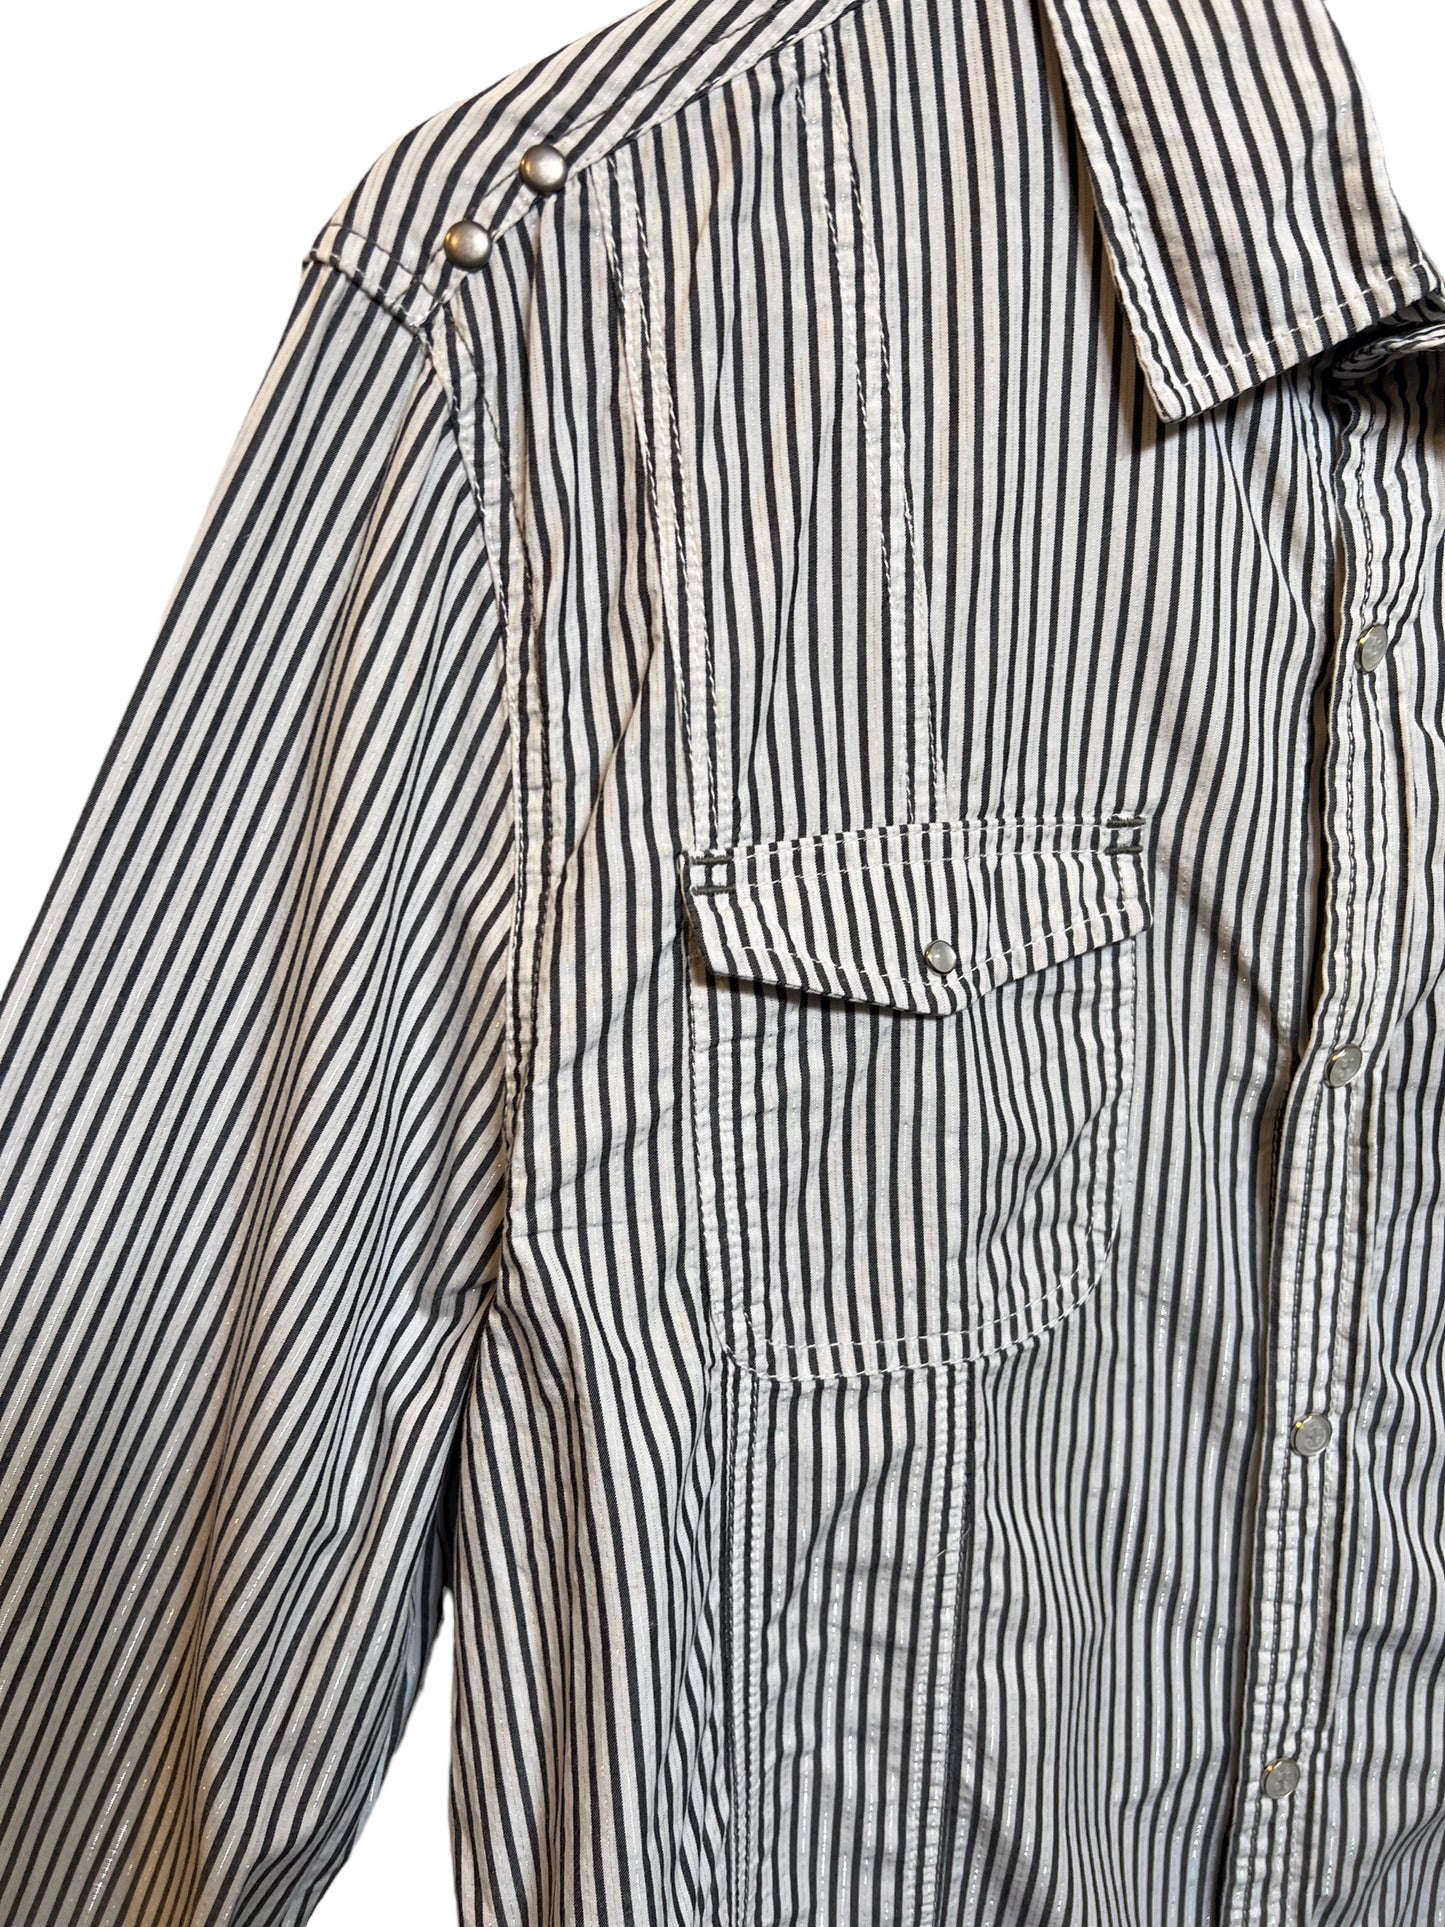 Men’s Striped White Shirt (Size L)